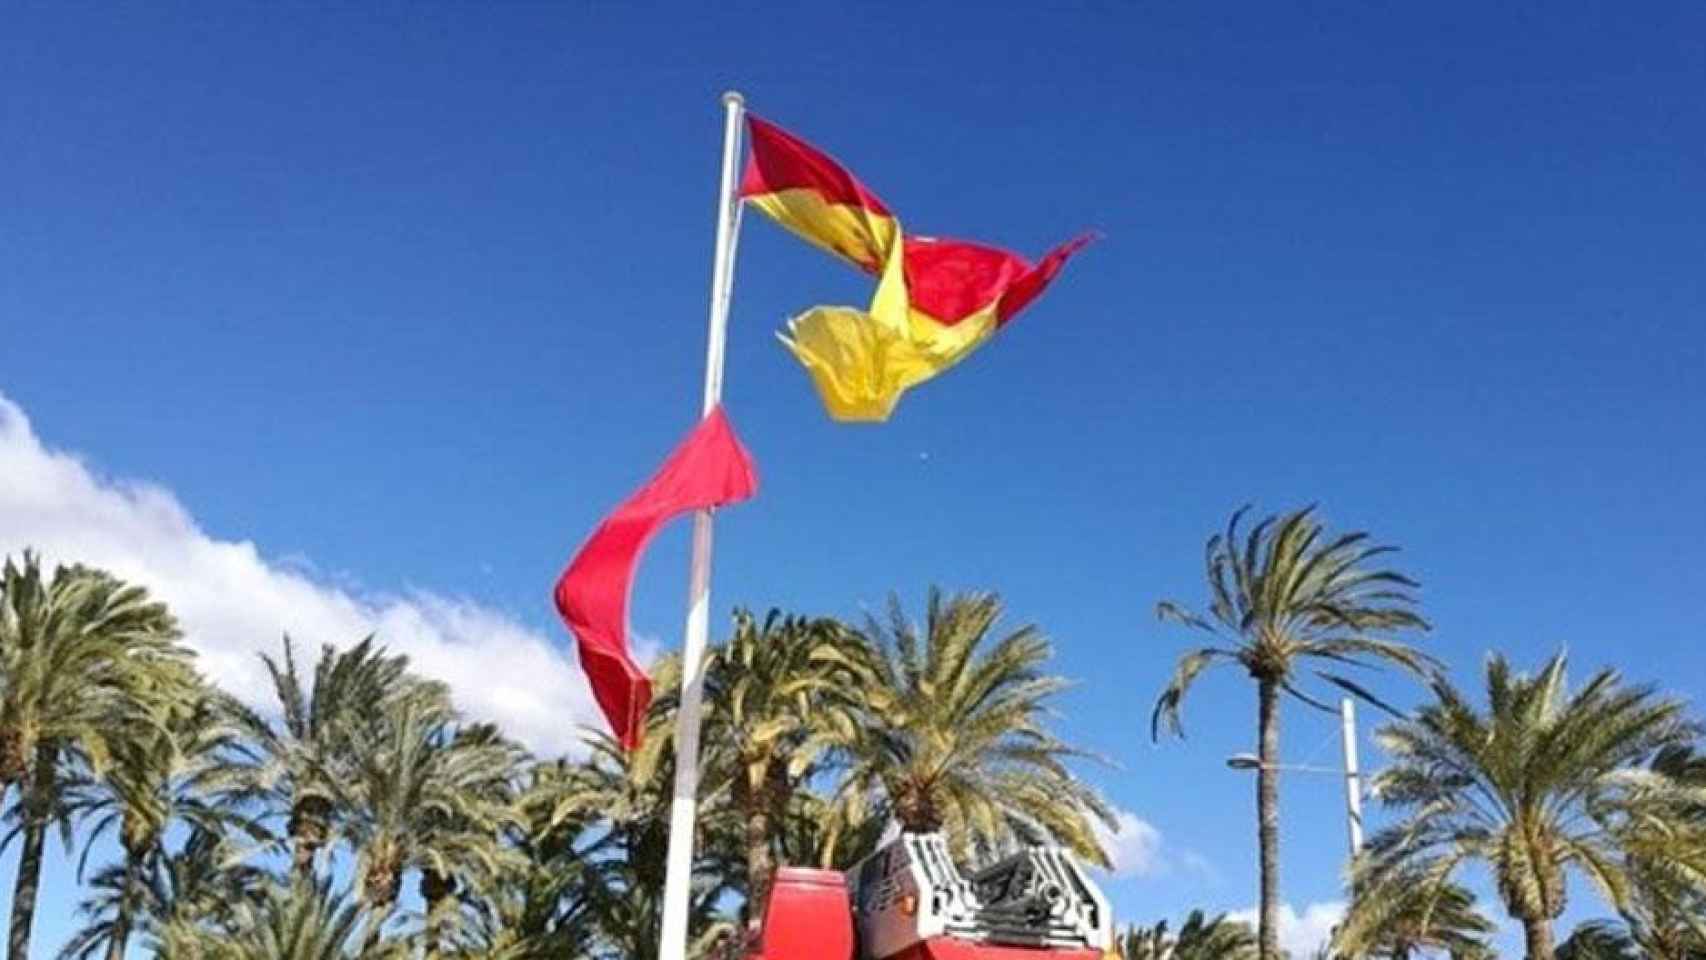 Una bandera rojigualda, uno de los símbolos de España, rota / EUROPA PRESS